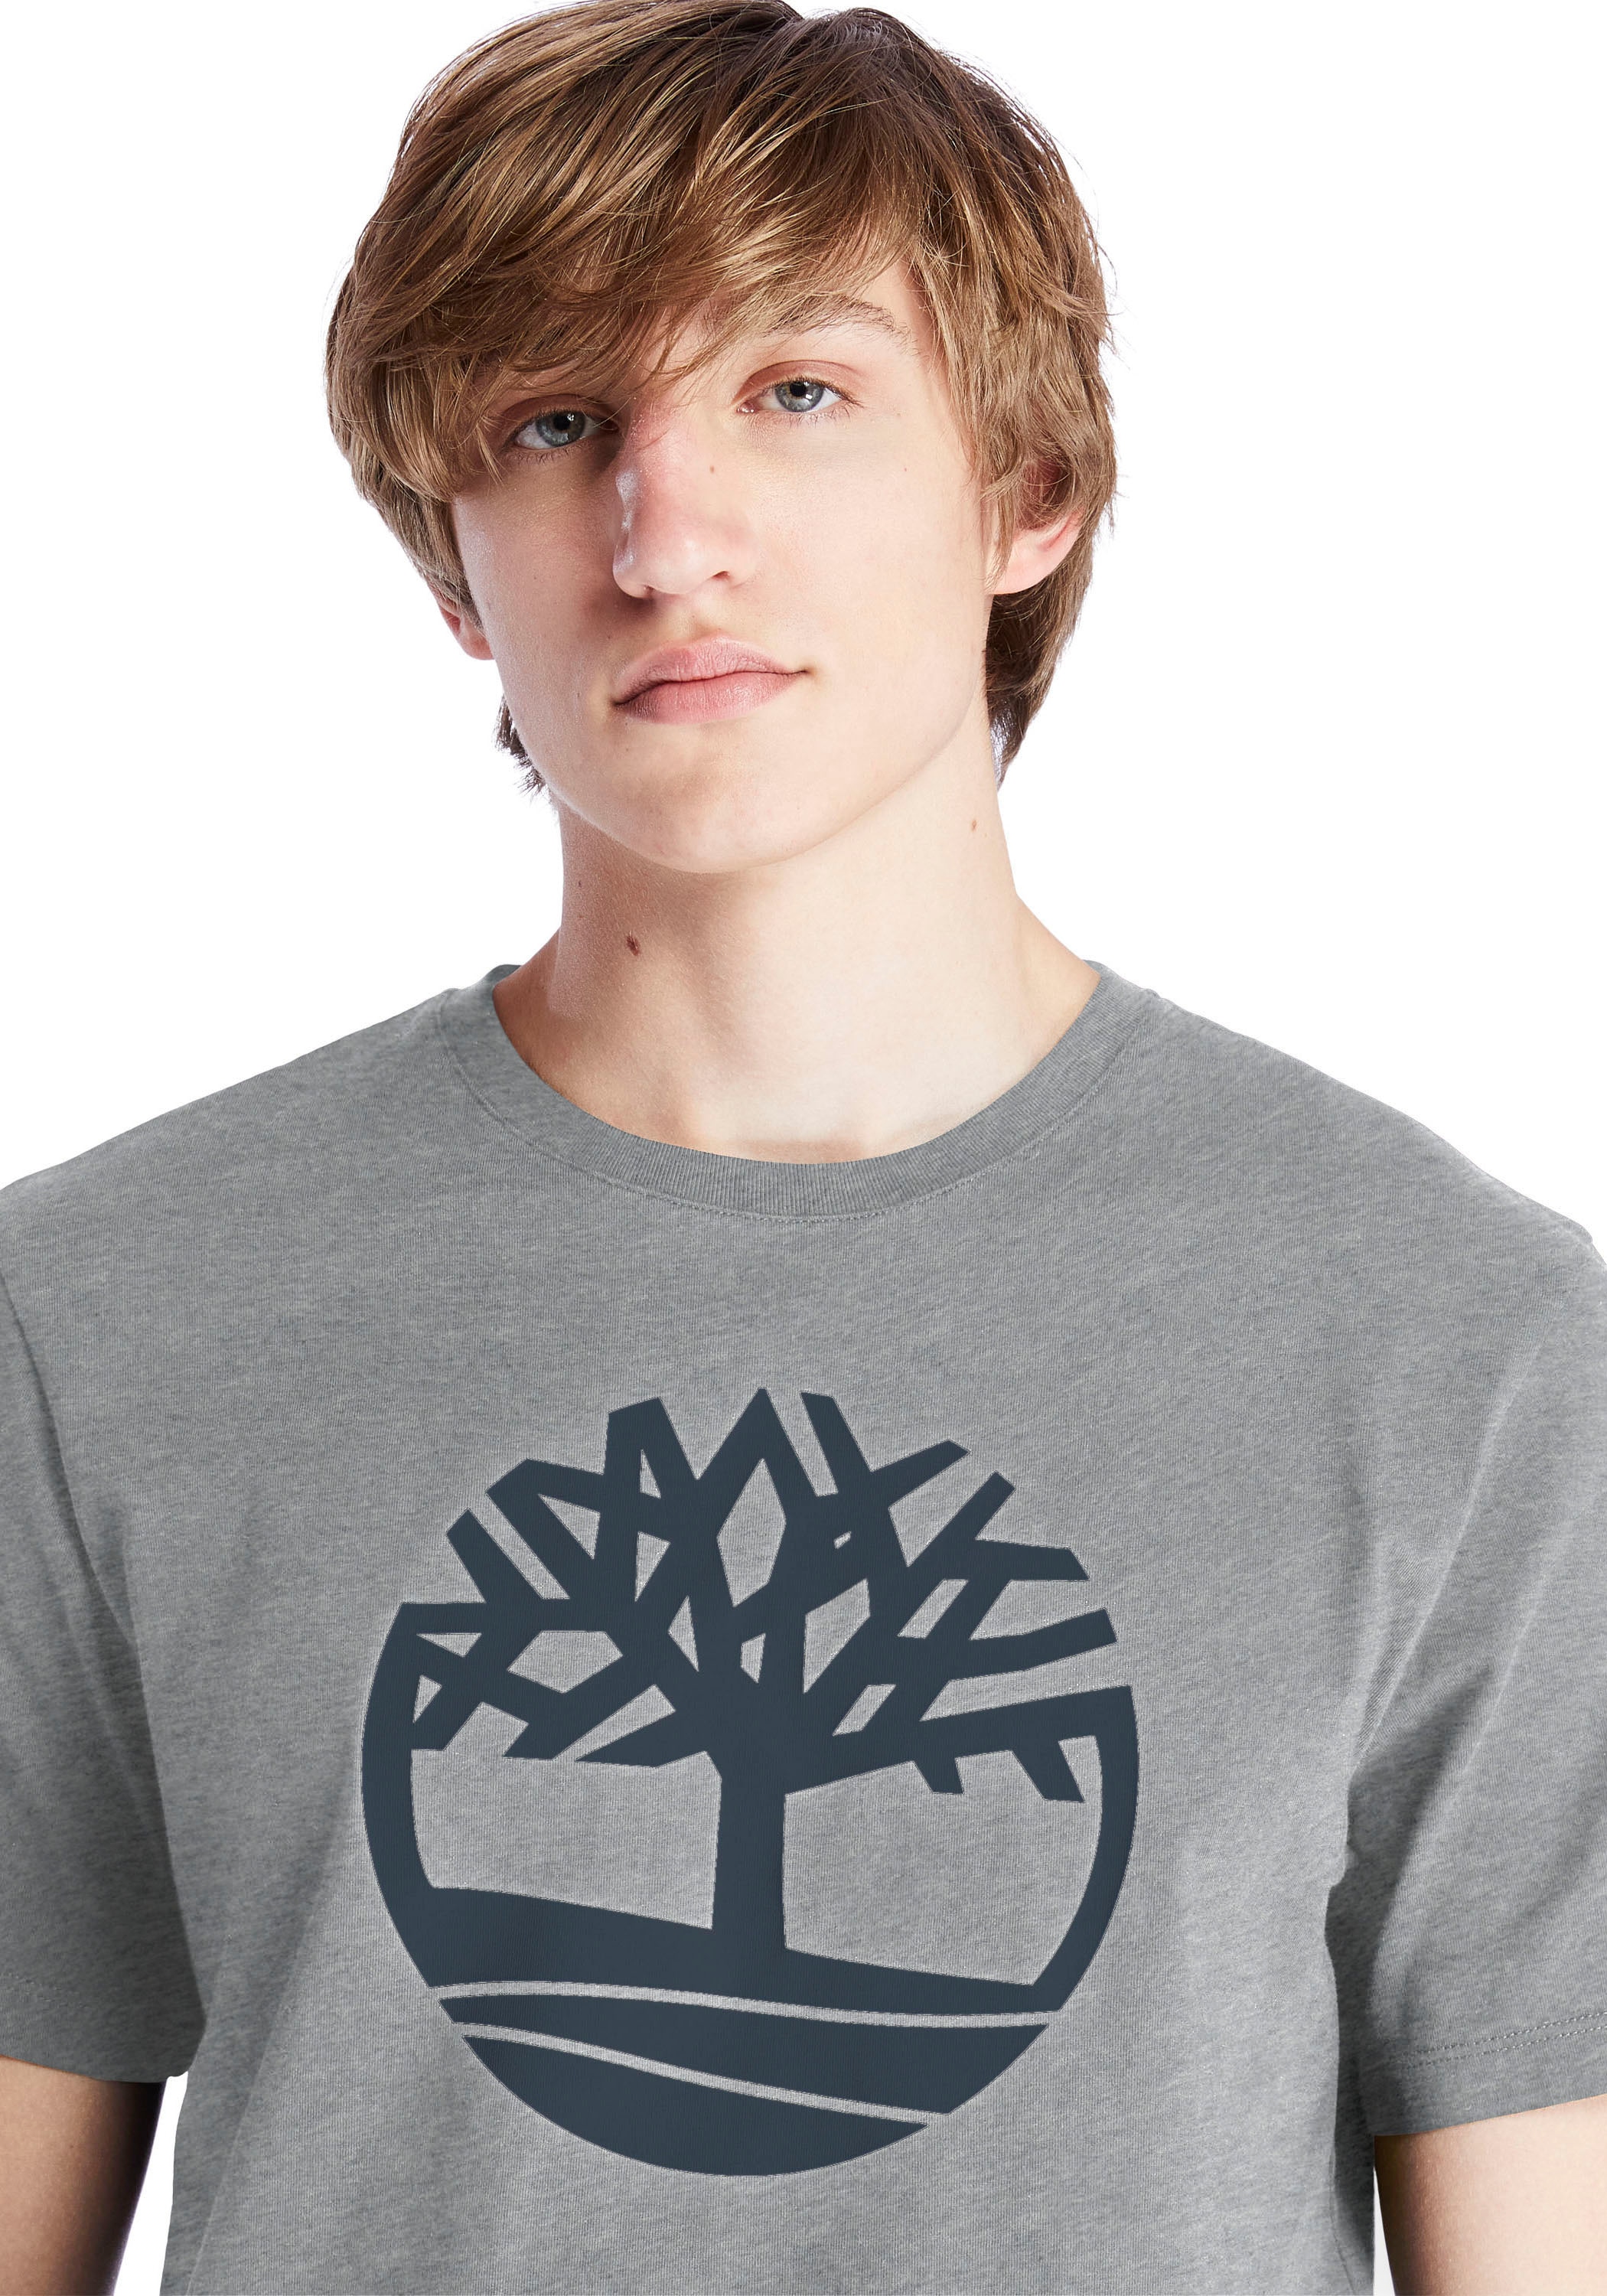 Timberland T-Shirt »Kennebec River Tree« online bestellen bei OTTO